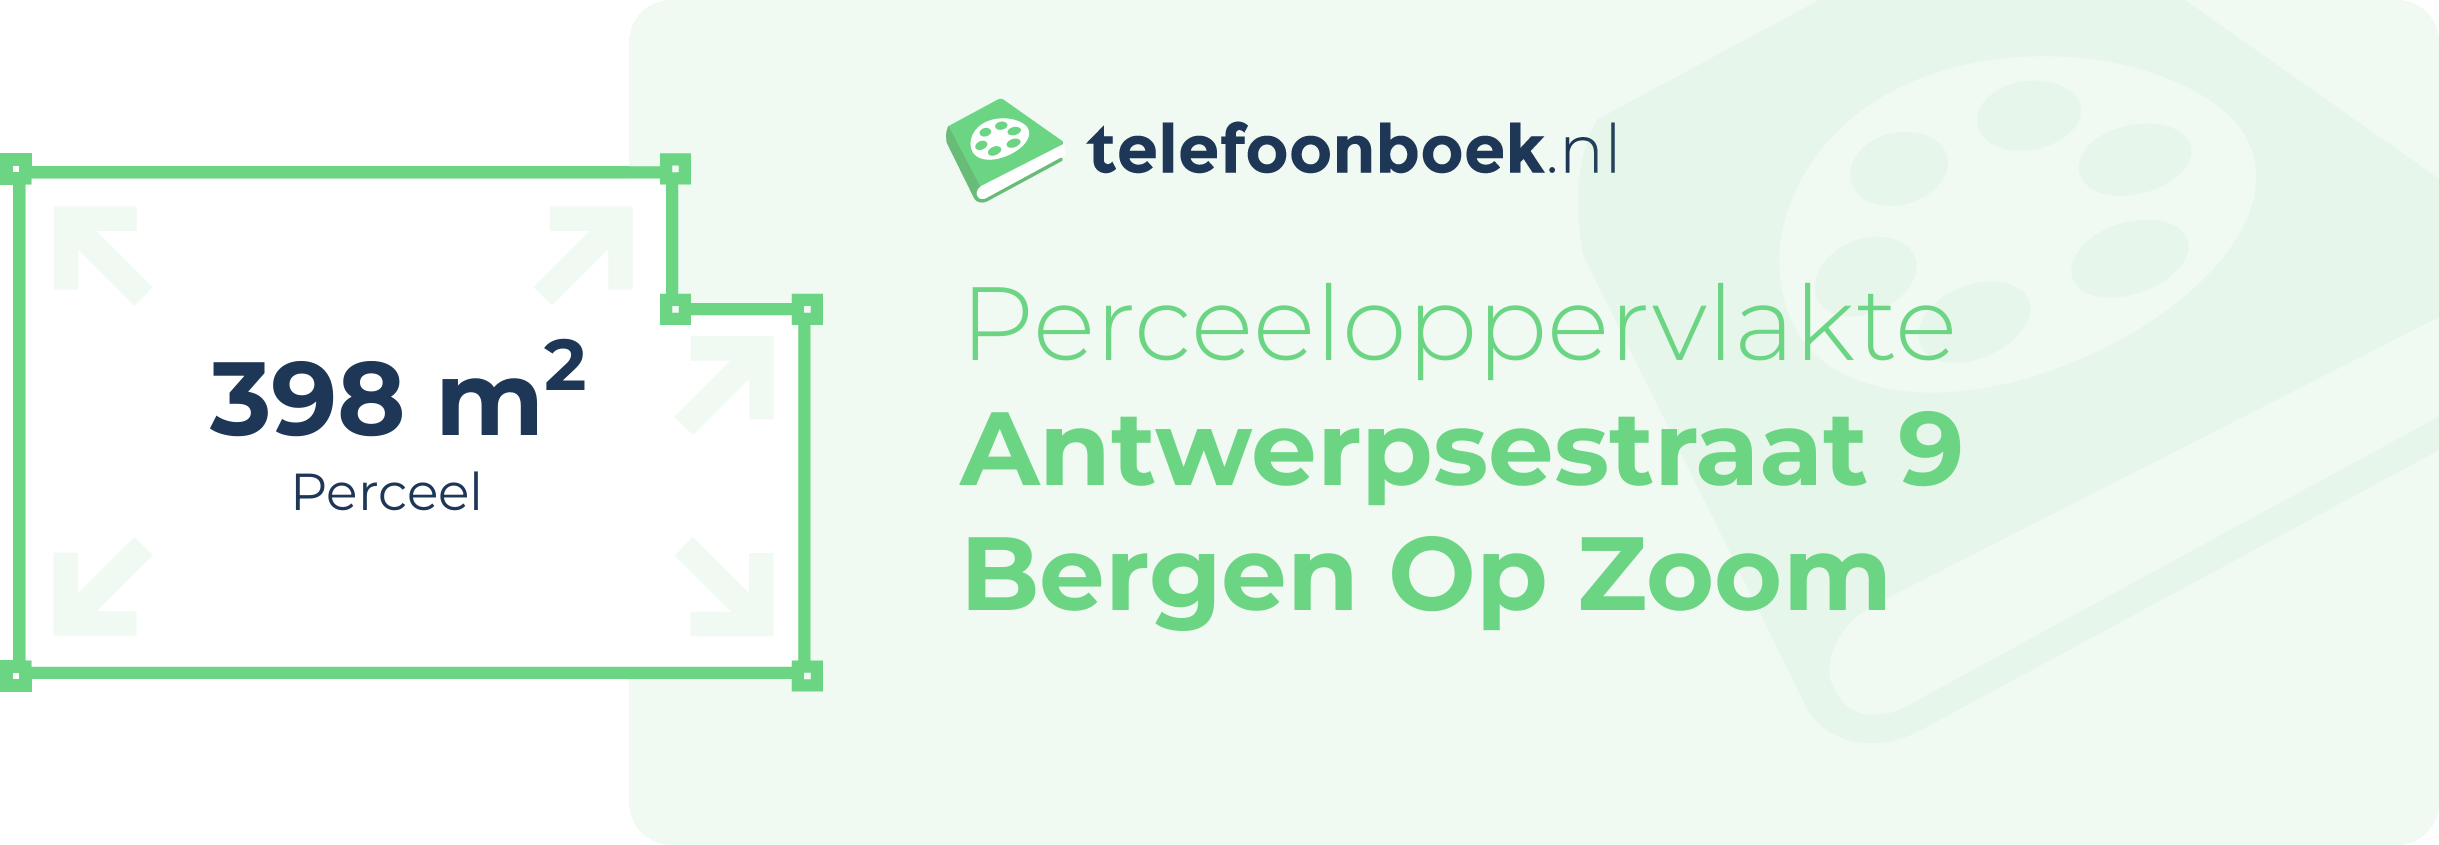 Perceeloppervlakte Antwerpsestraat 9 Bergen Op Zoom